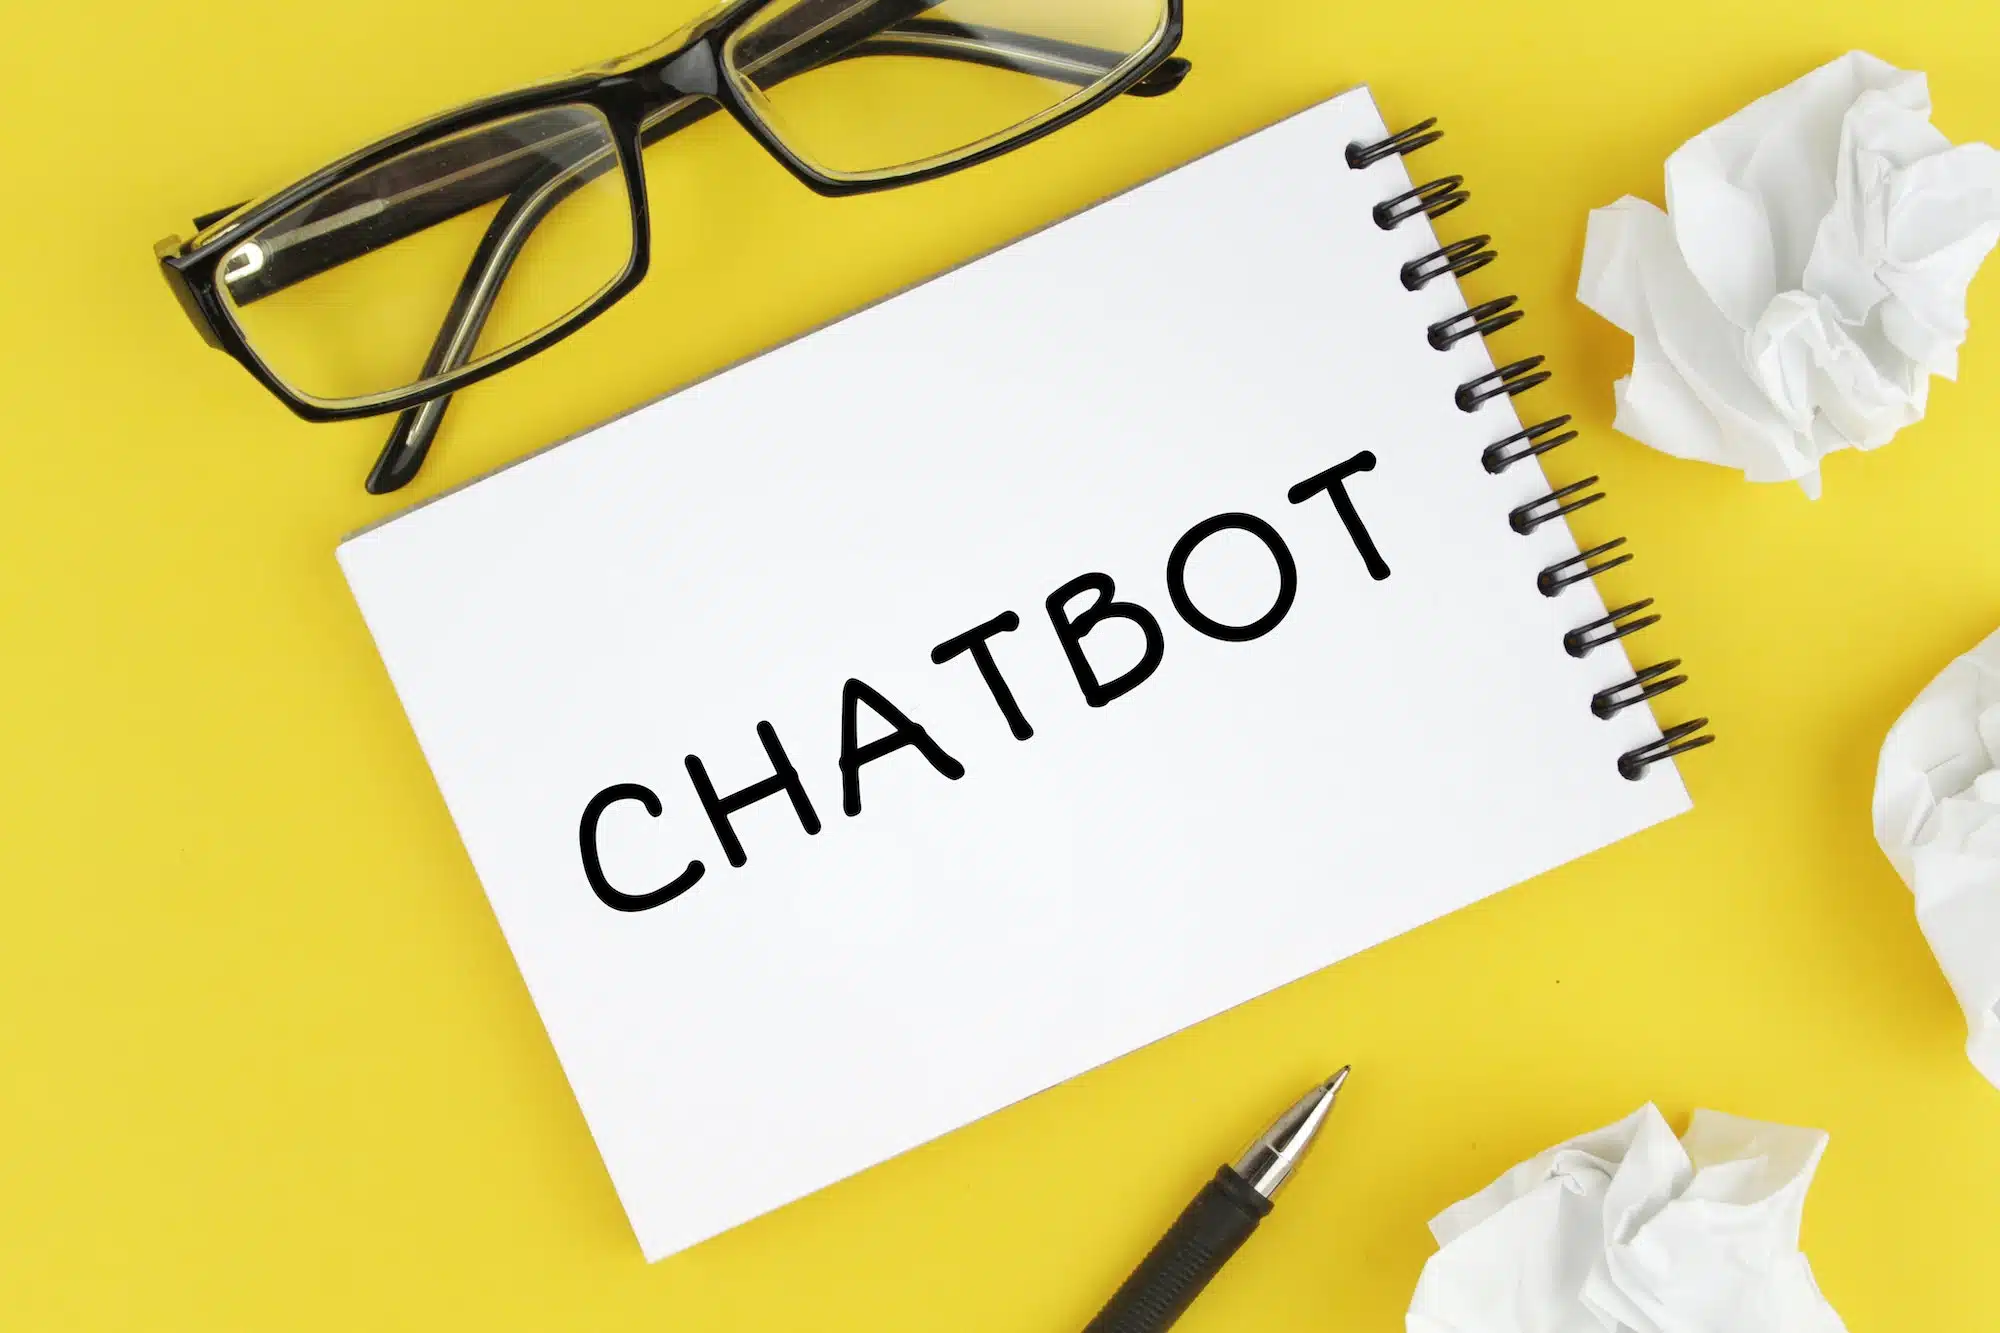 Der KI-Chatbot Bard von Google, der auf einem digitalen Gerät angezeigt wird, symbolisiert seine breite Zugänglichkeit und Sprachunterstützung.